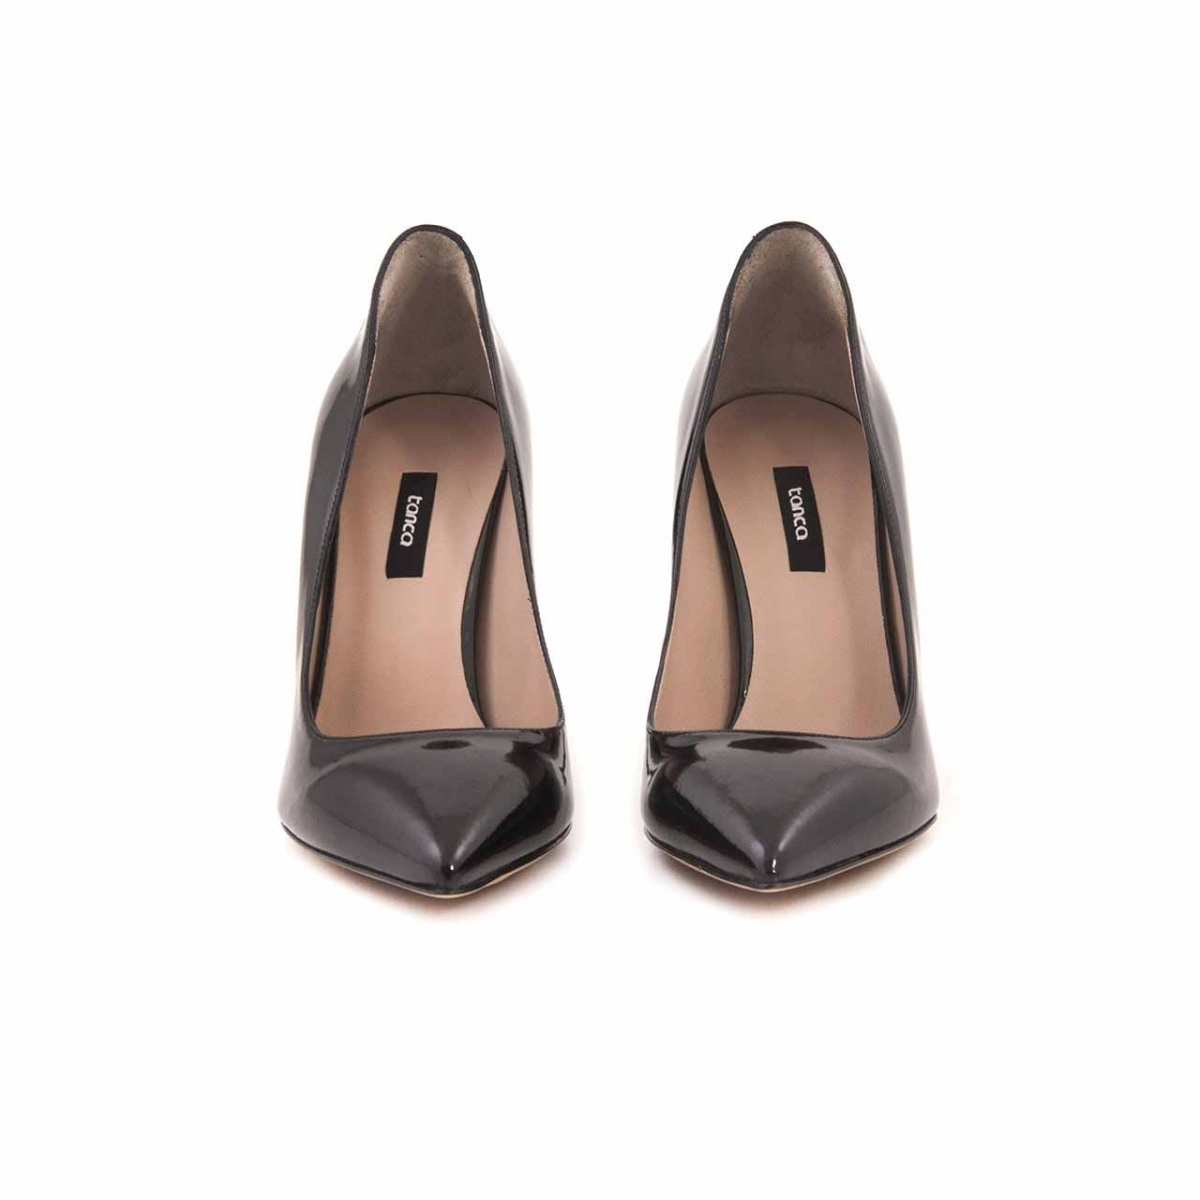 Flo Deri Stiletto Kadın Klasik Ayakkabı 21761. 2